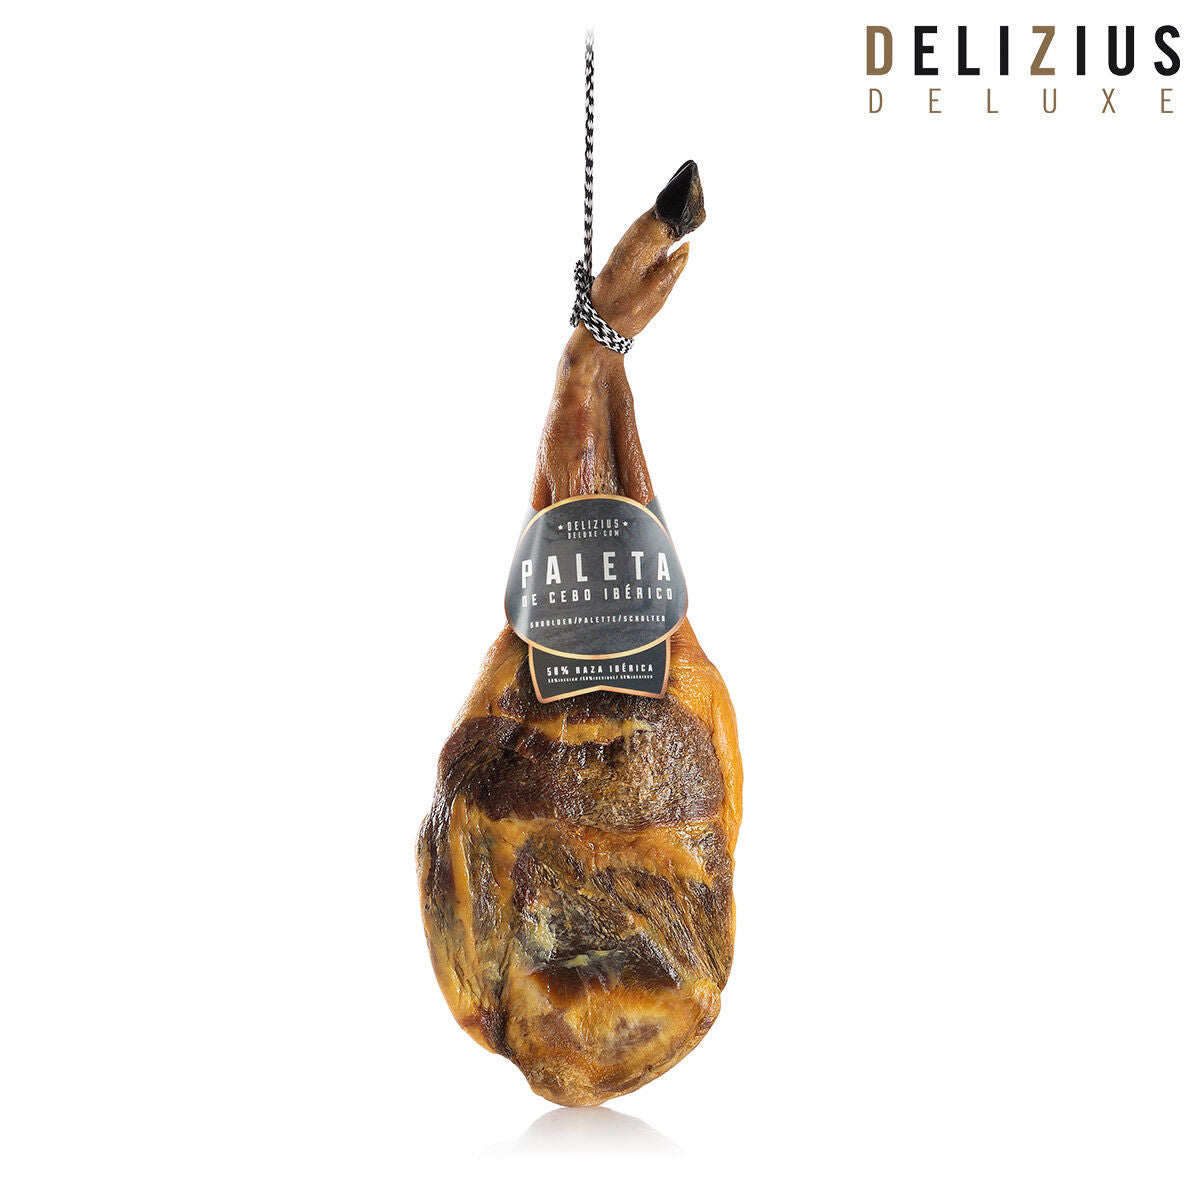 Iberische schouder van een met graan gevoerd varken Delizius Deluxe